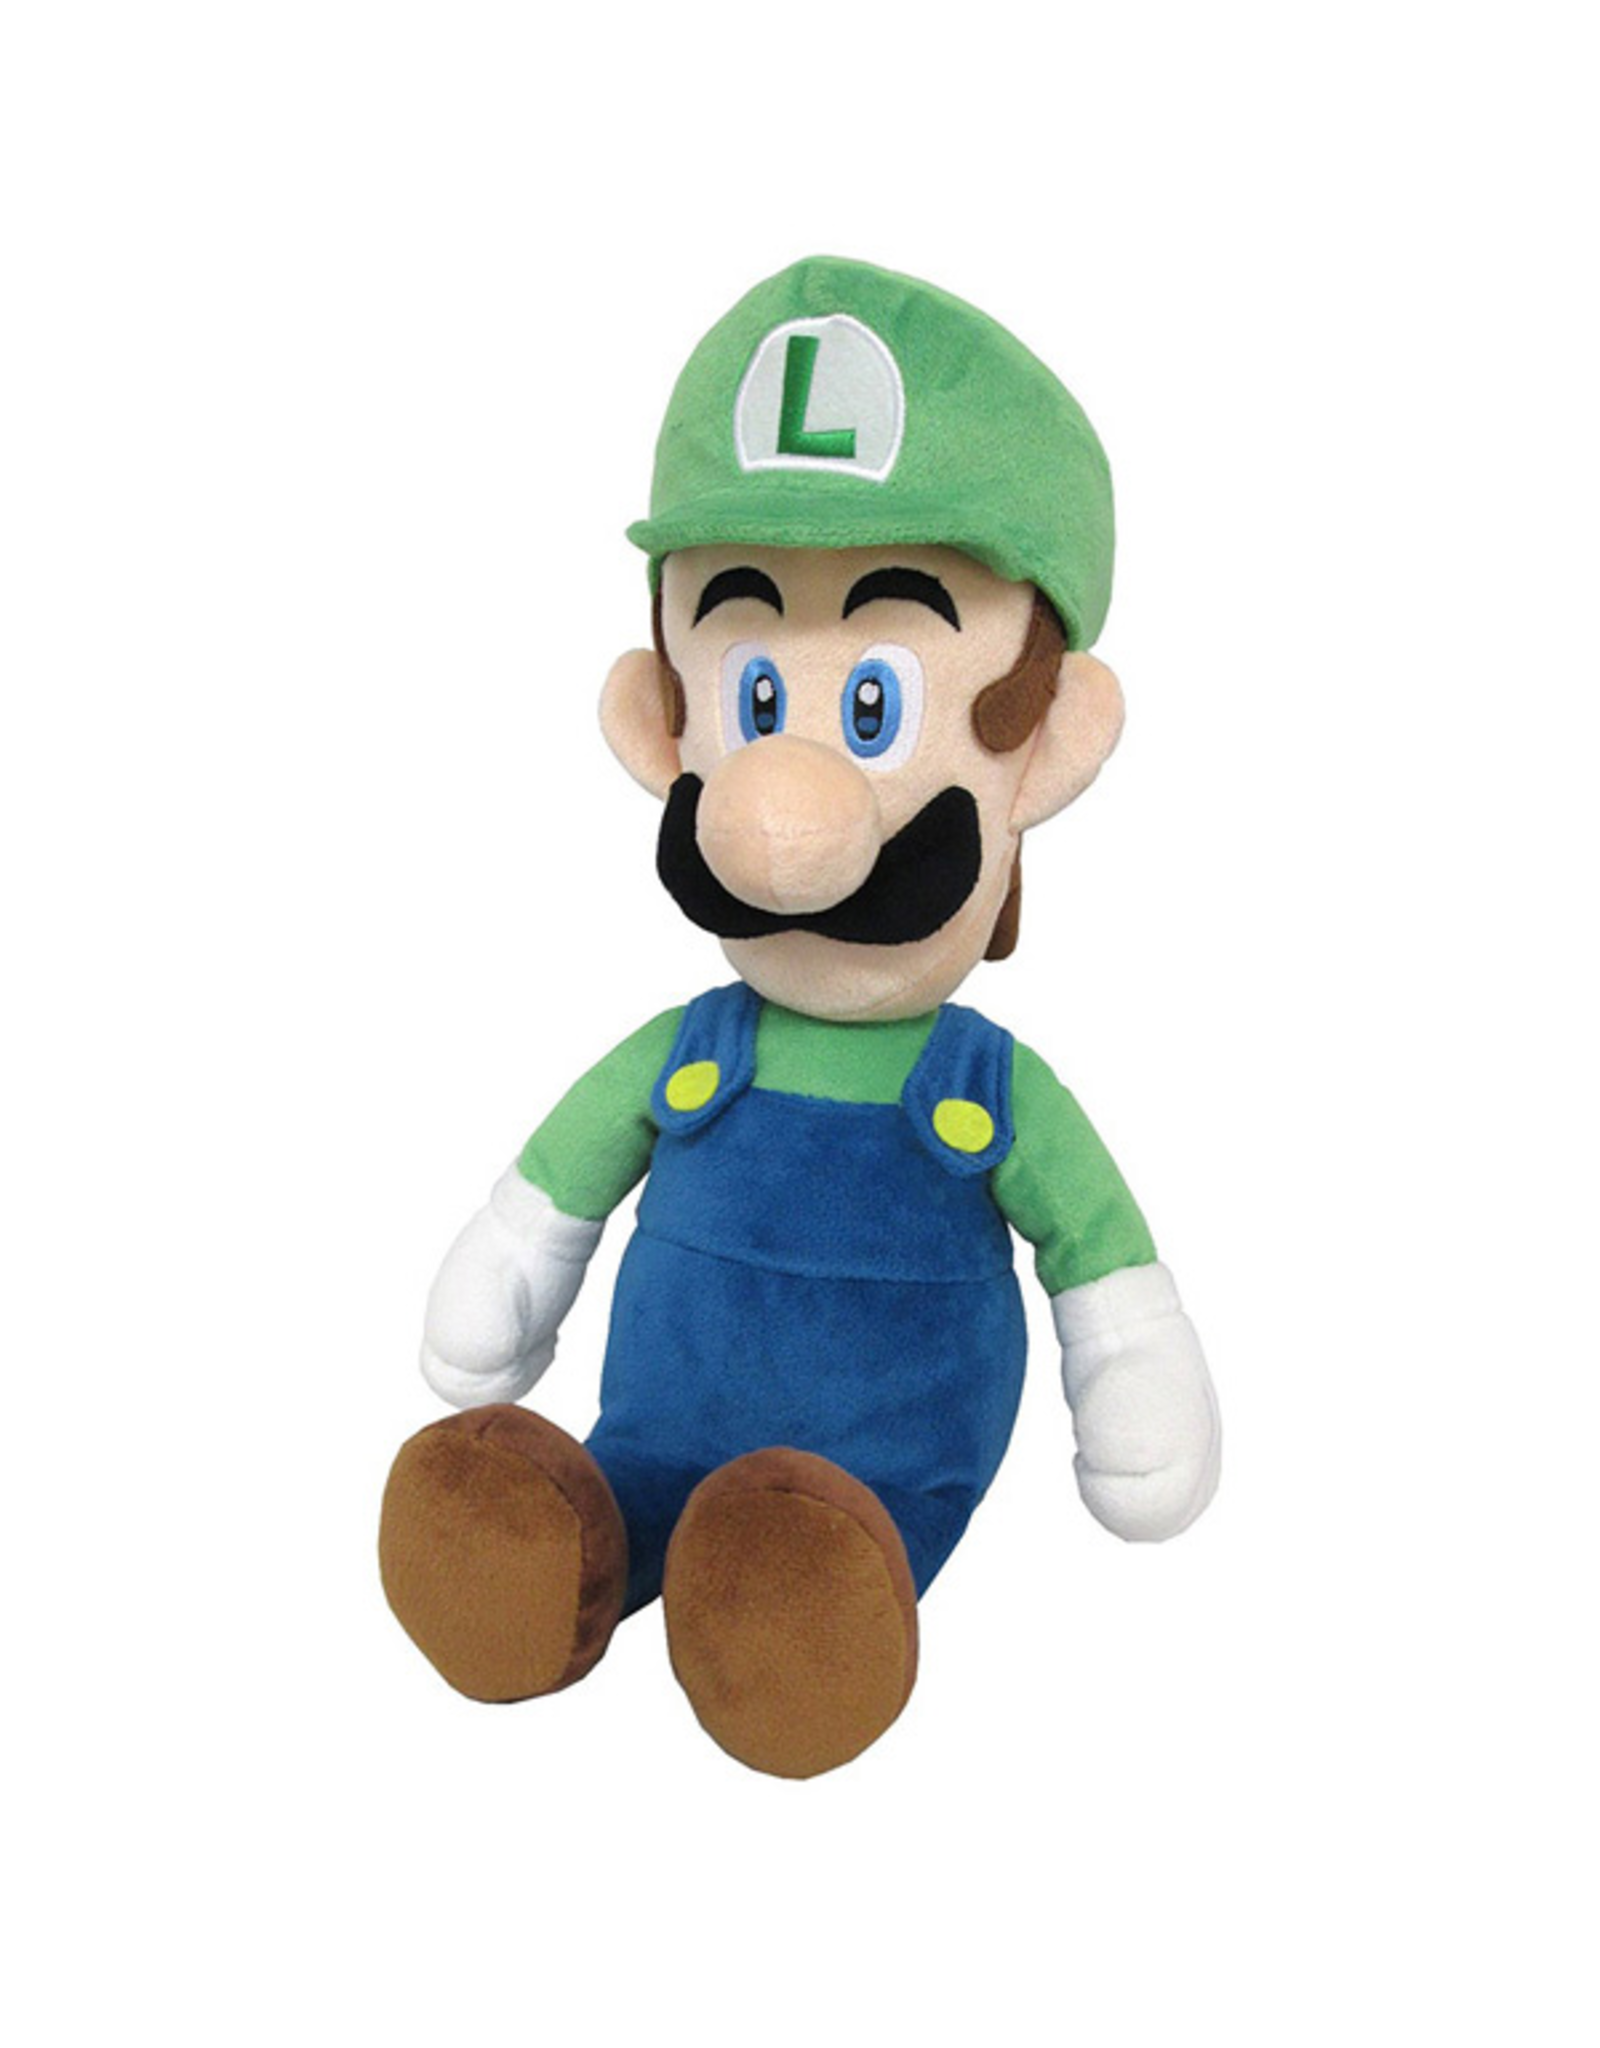 Little Buddy Super Mario Bros - Luigi - 15" Plush